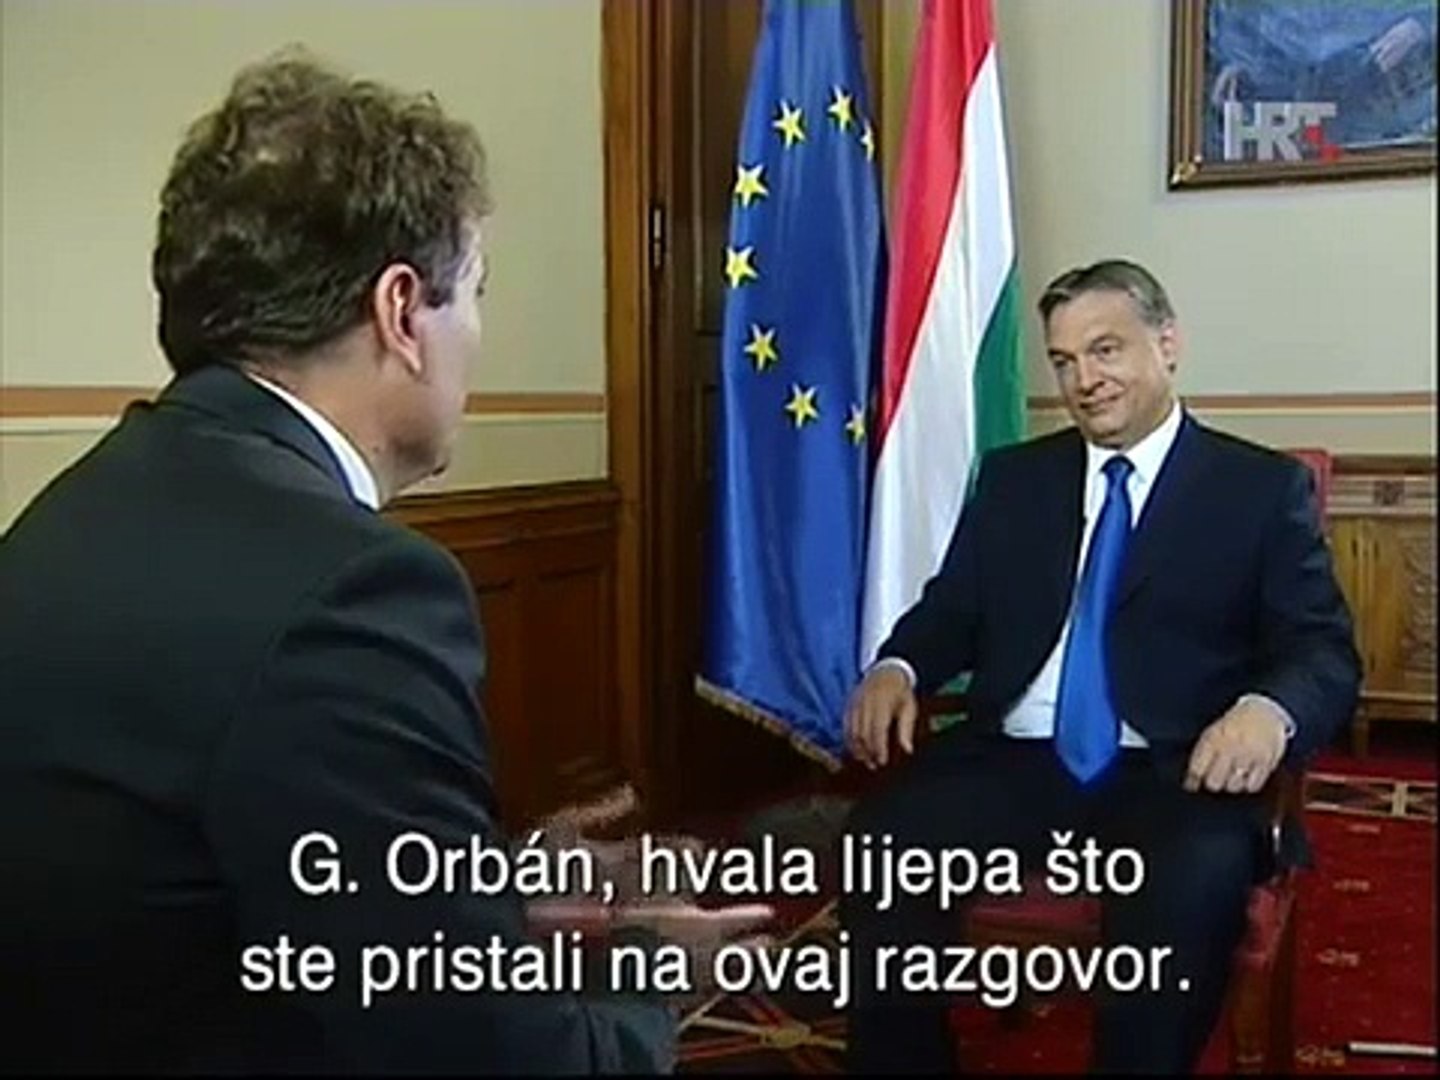 HRT  Dnevnik plus Viktor Orban 06.2013.